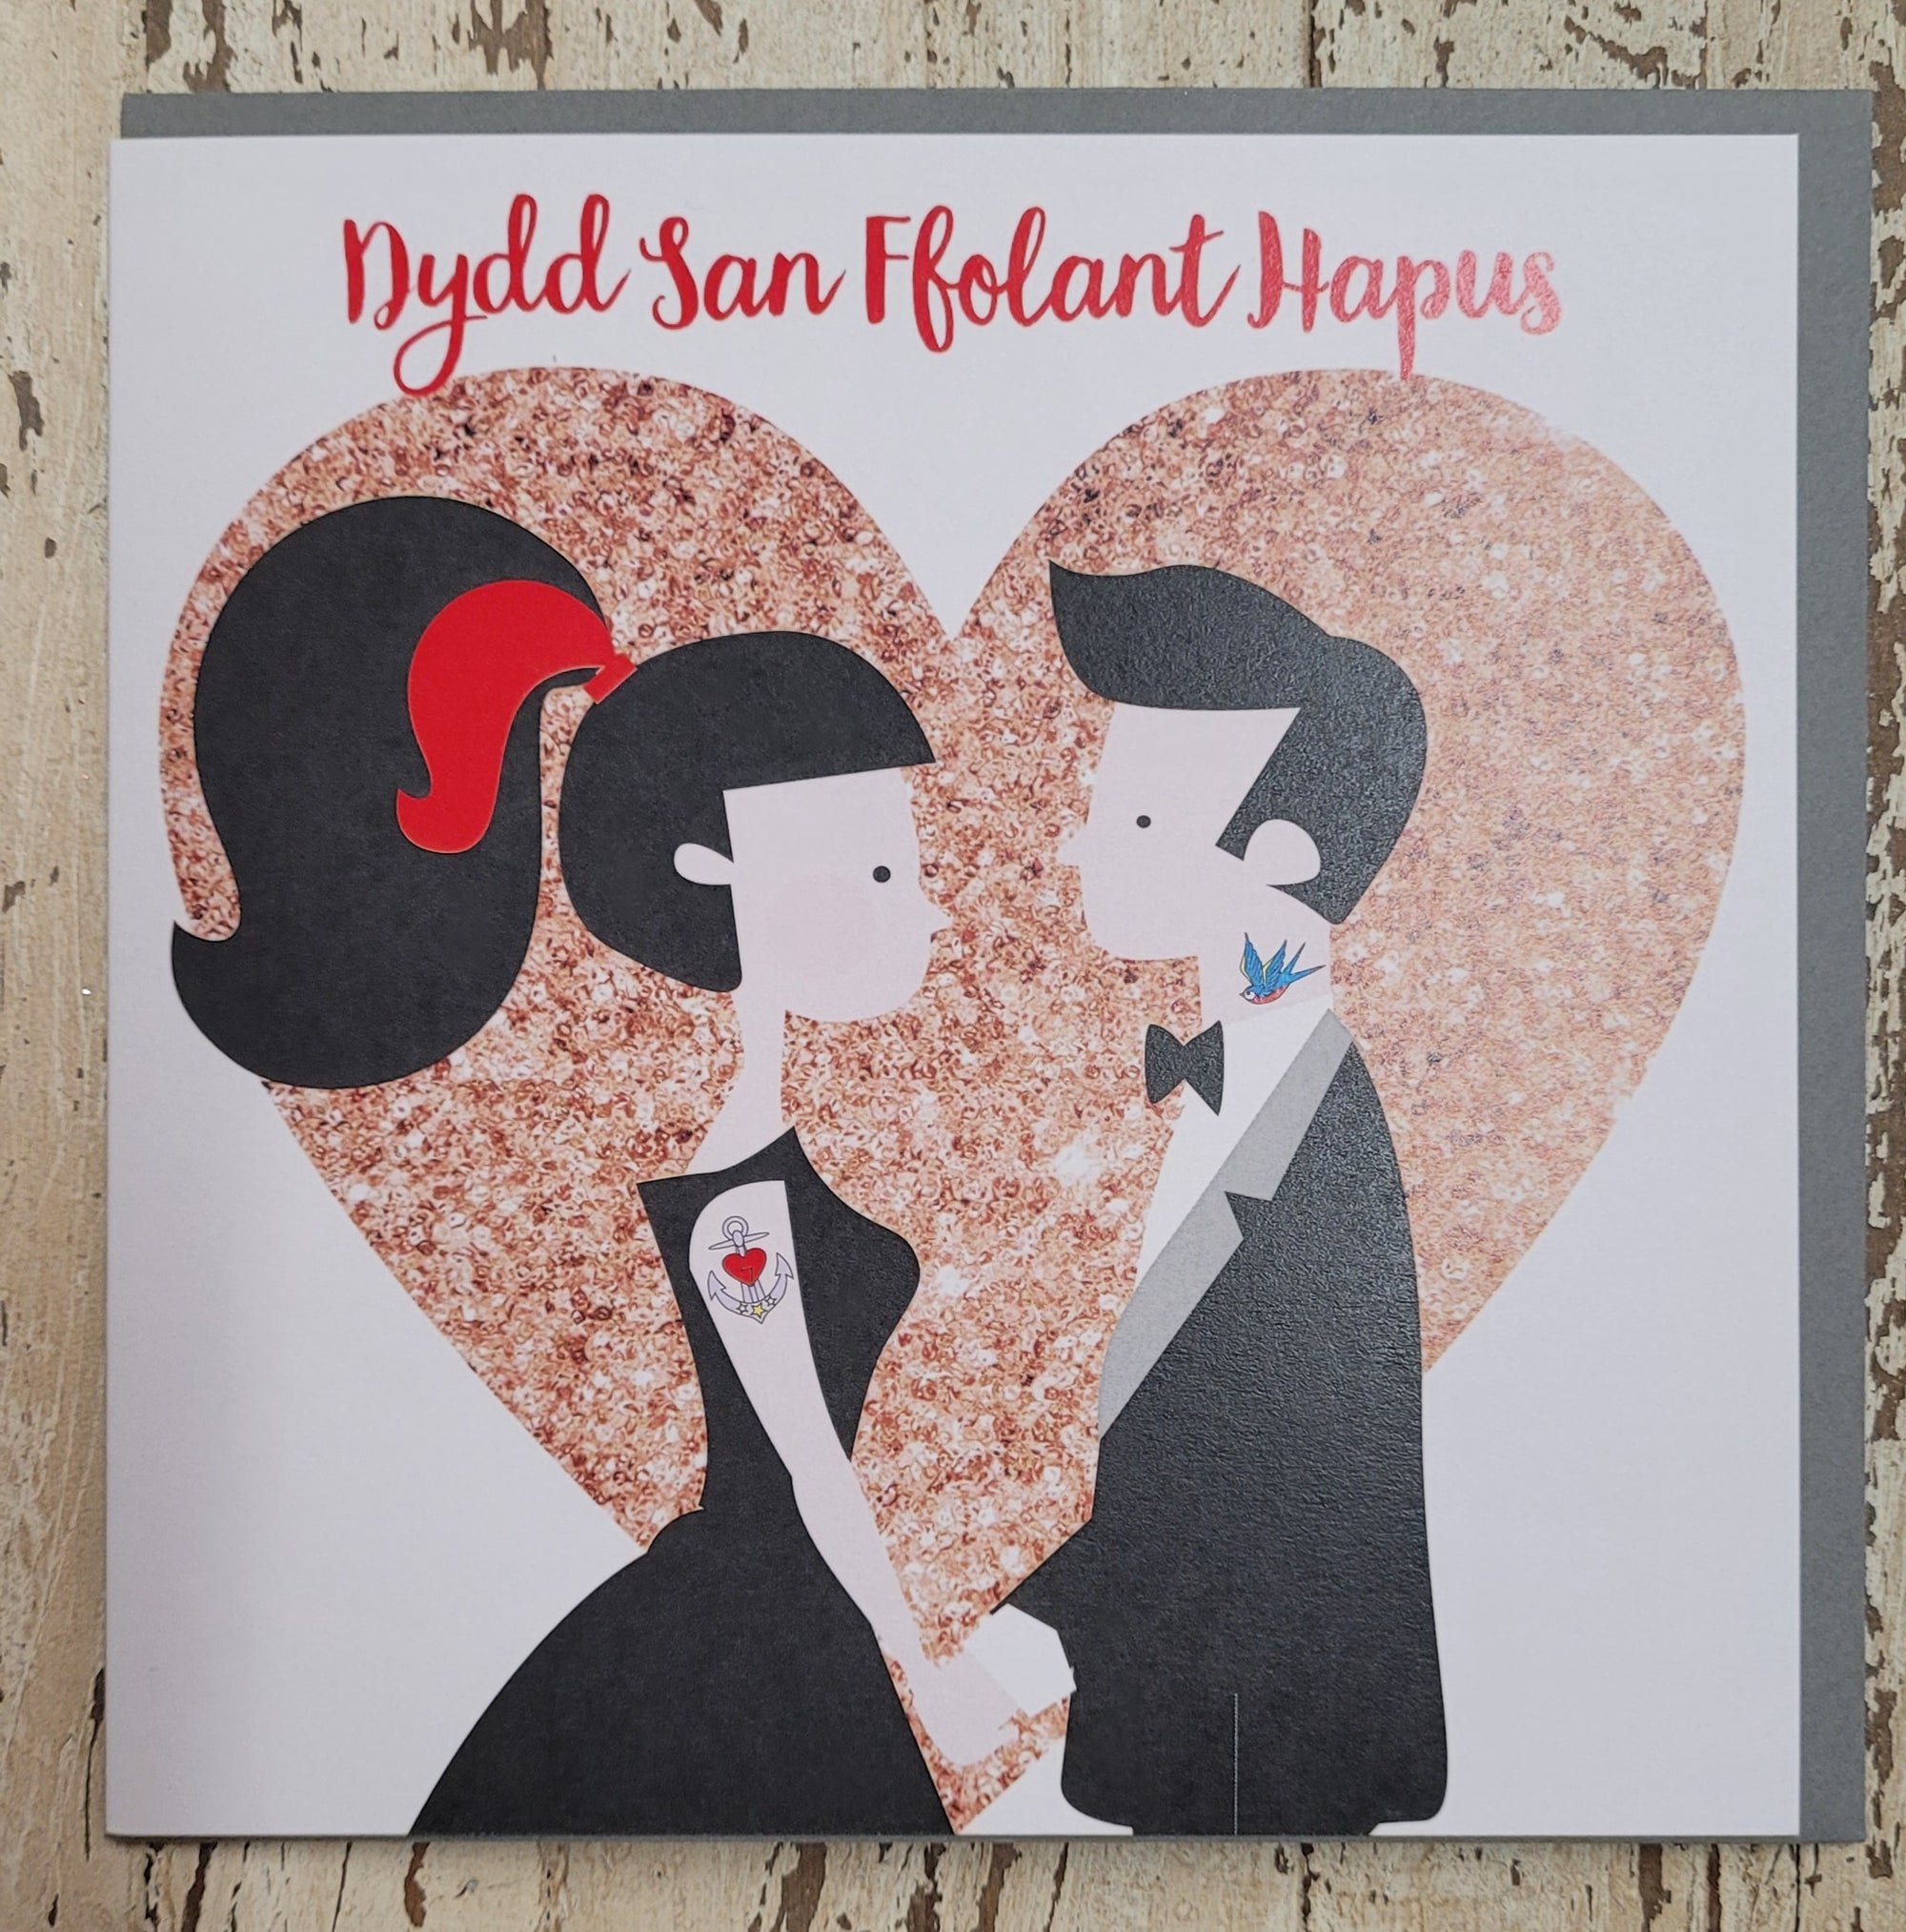 dydd San Ffolant hapus card (happy Valentines day)